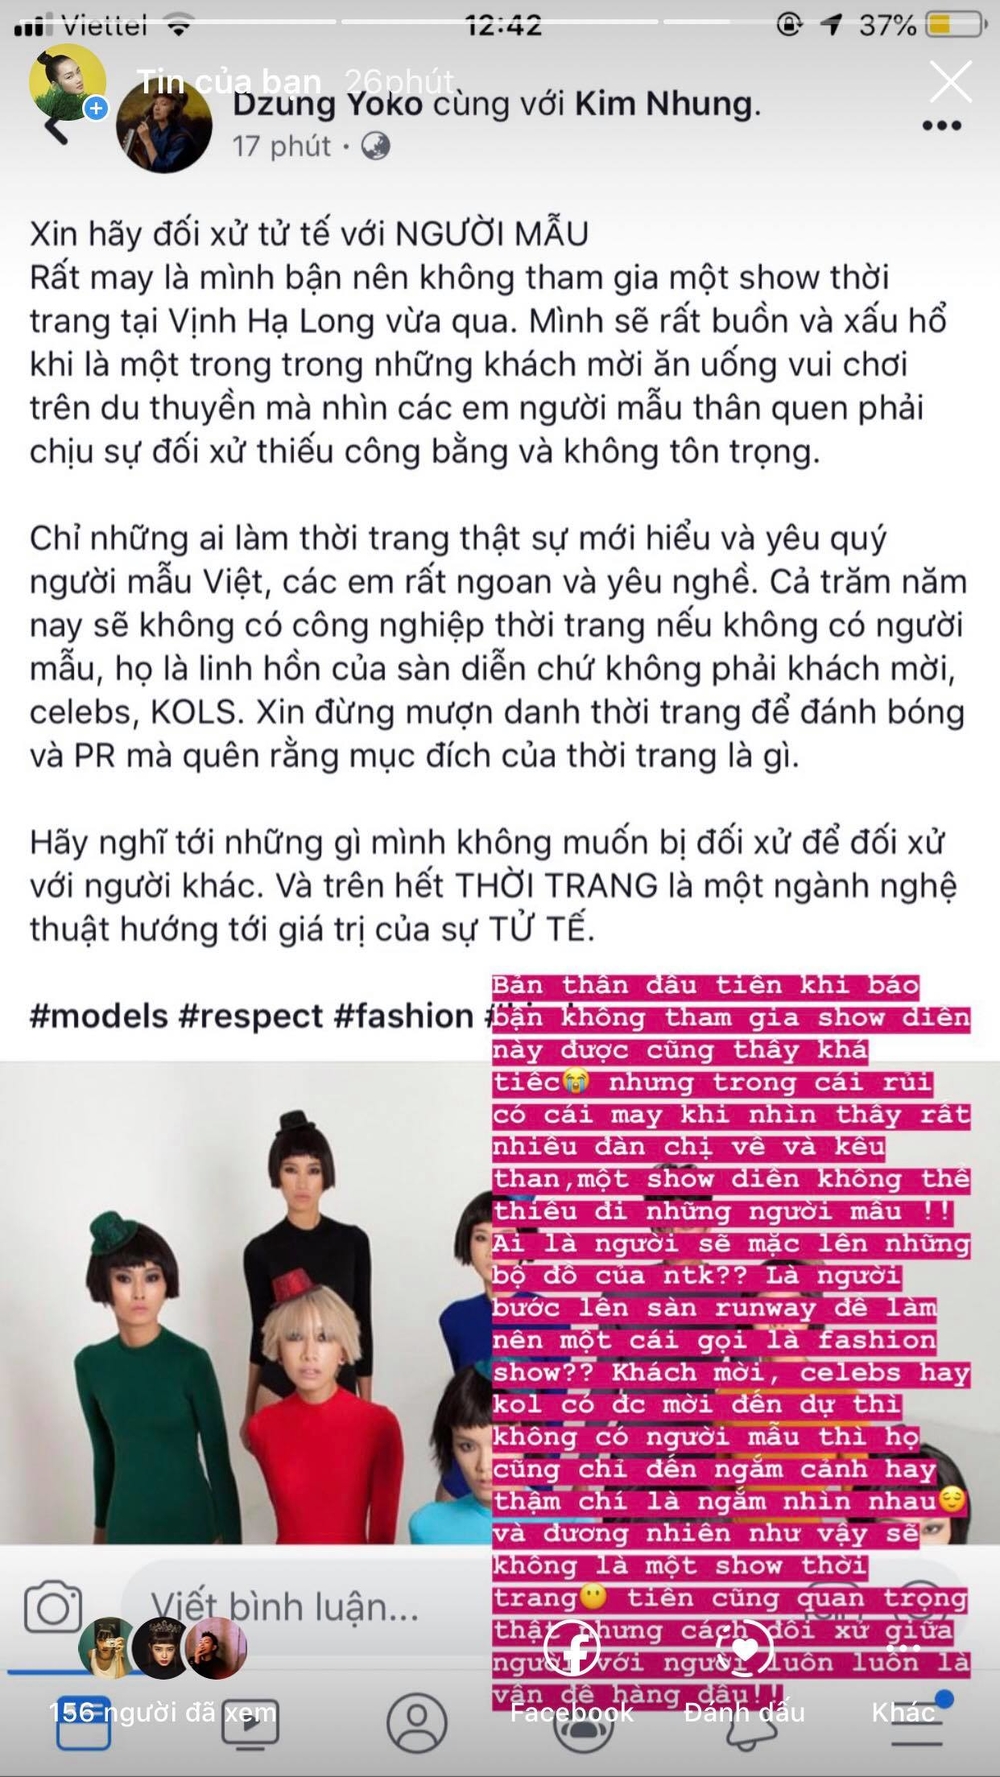  
Á quân The Face - Quỳnh Anh cũng lên tiếng đòi sự công bằng cho người mẫu.